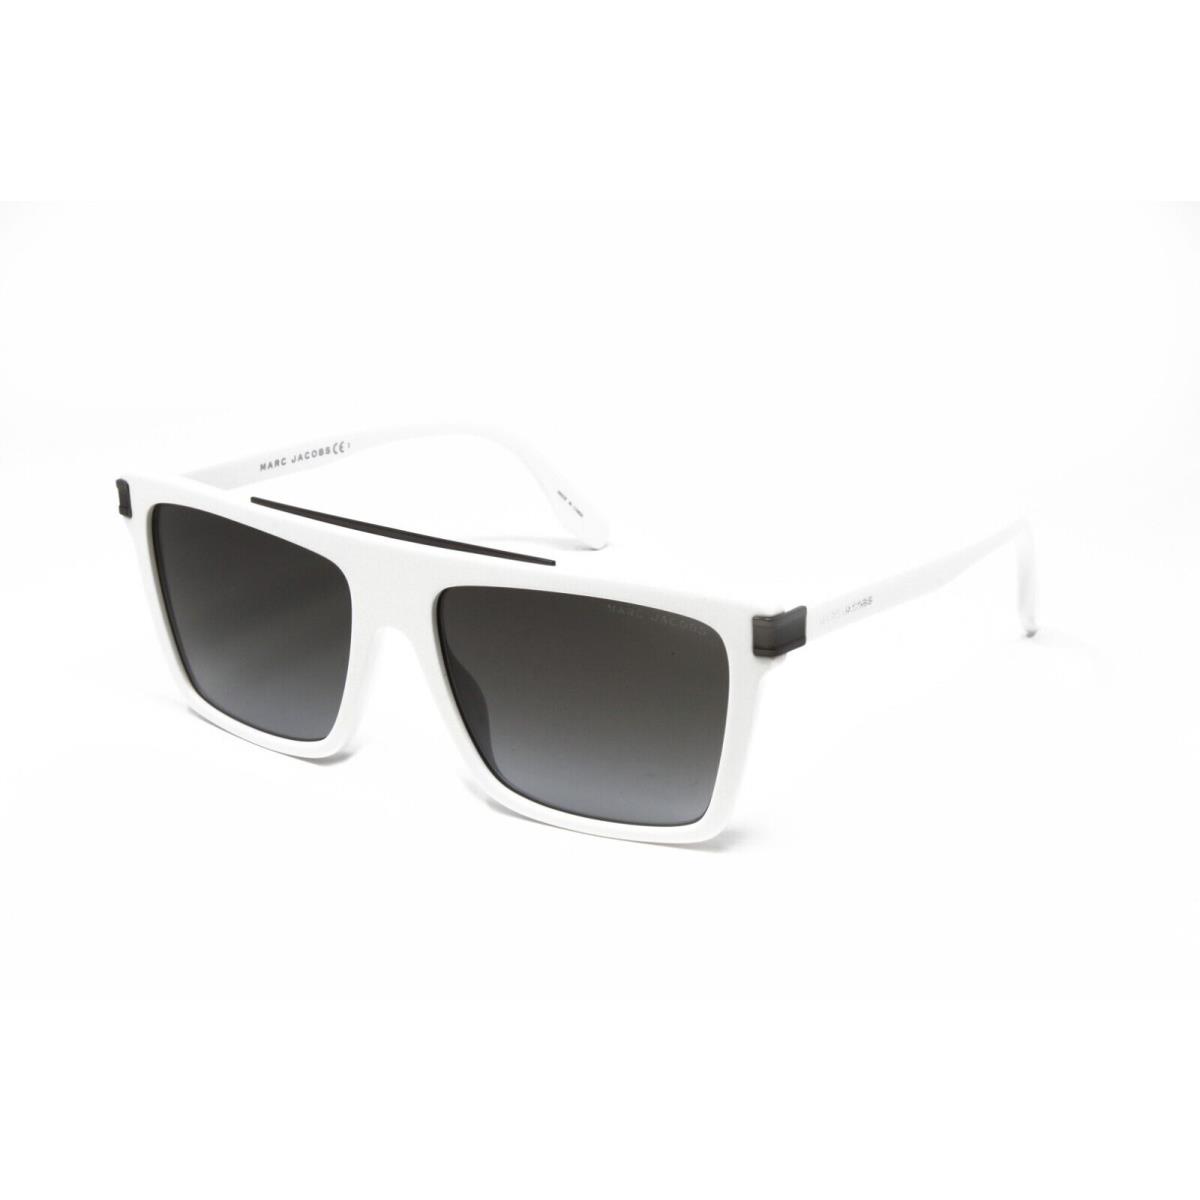 Marc Jacobs sunglasses  - White Frame, Gray Lens 3